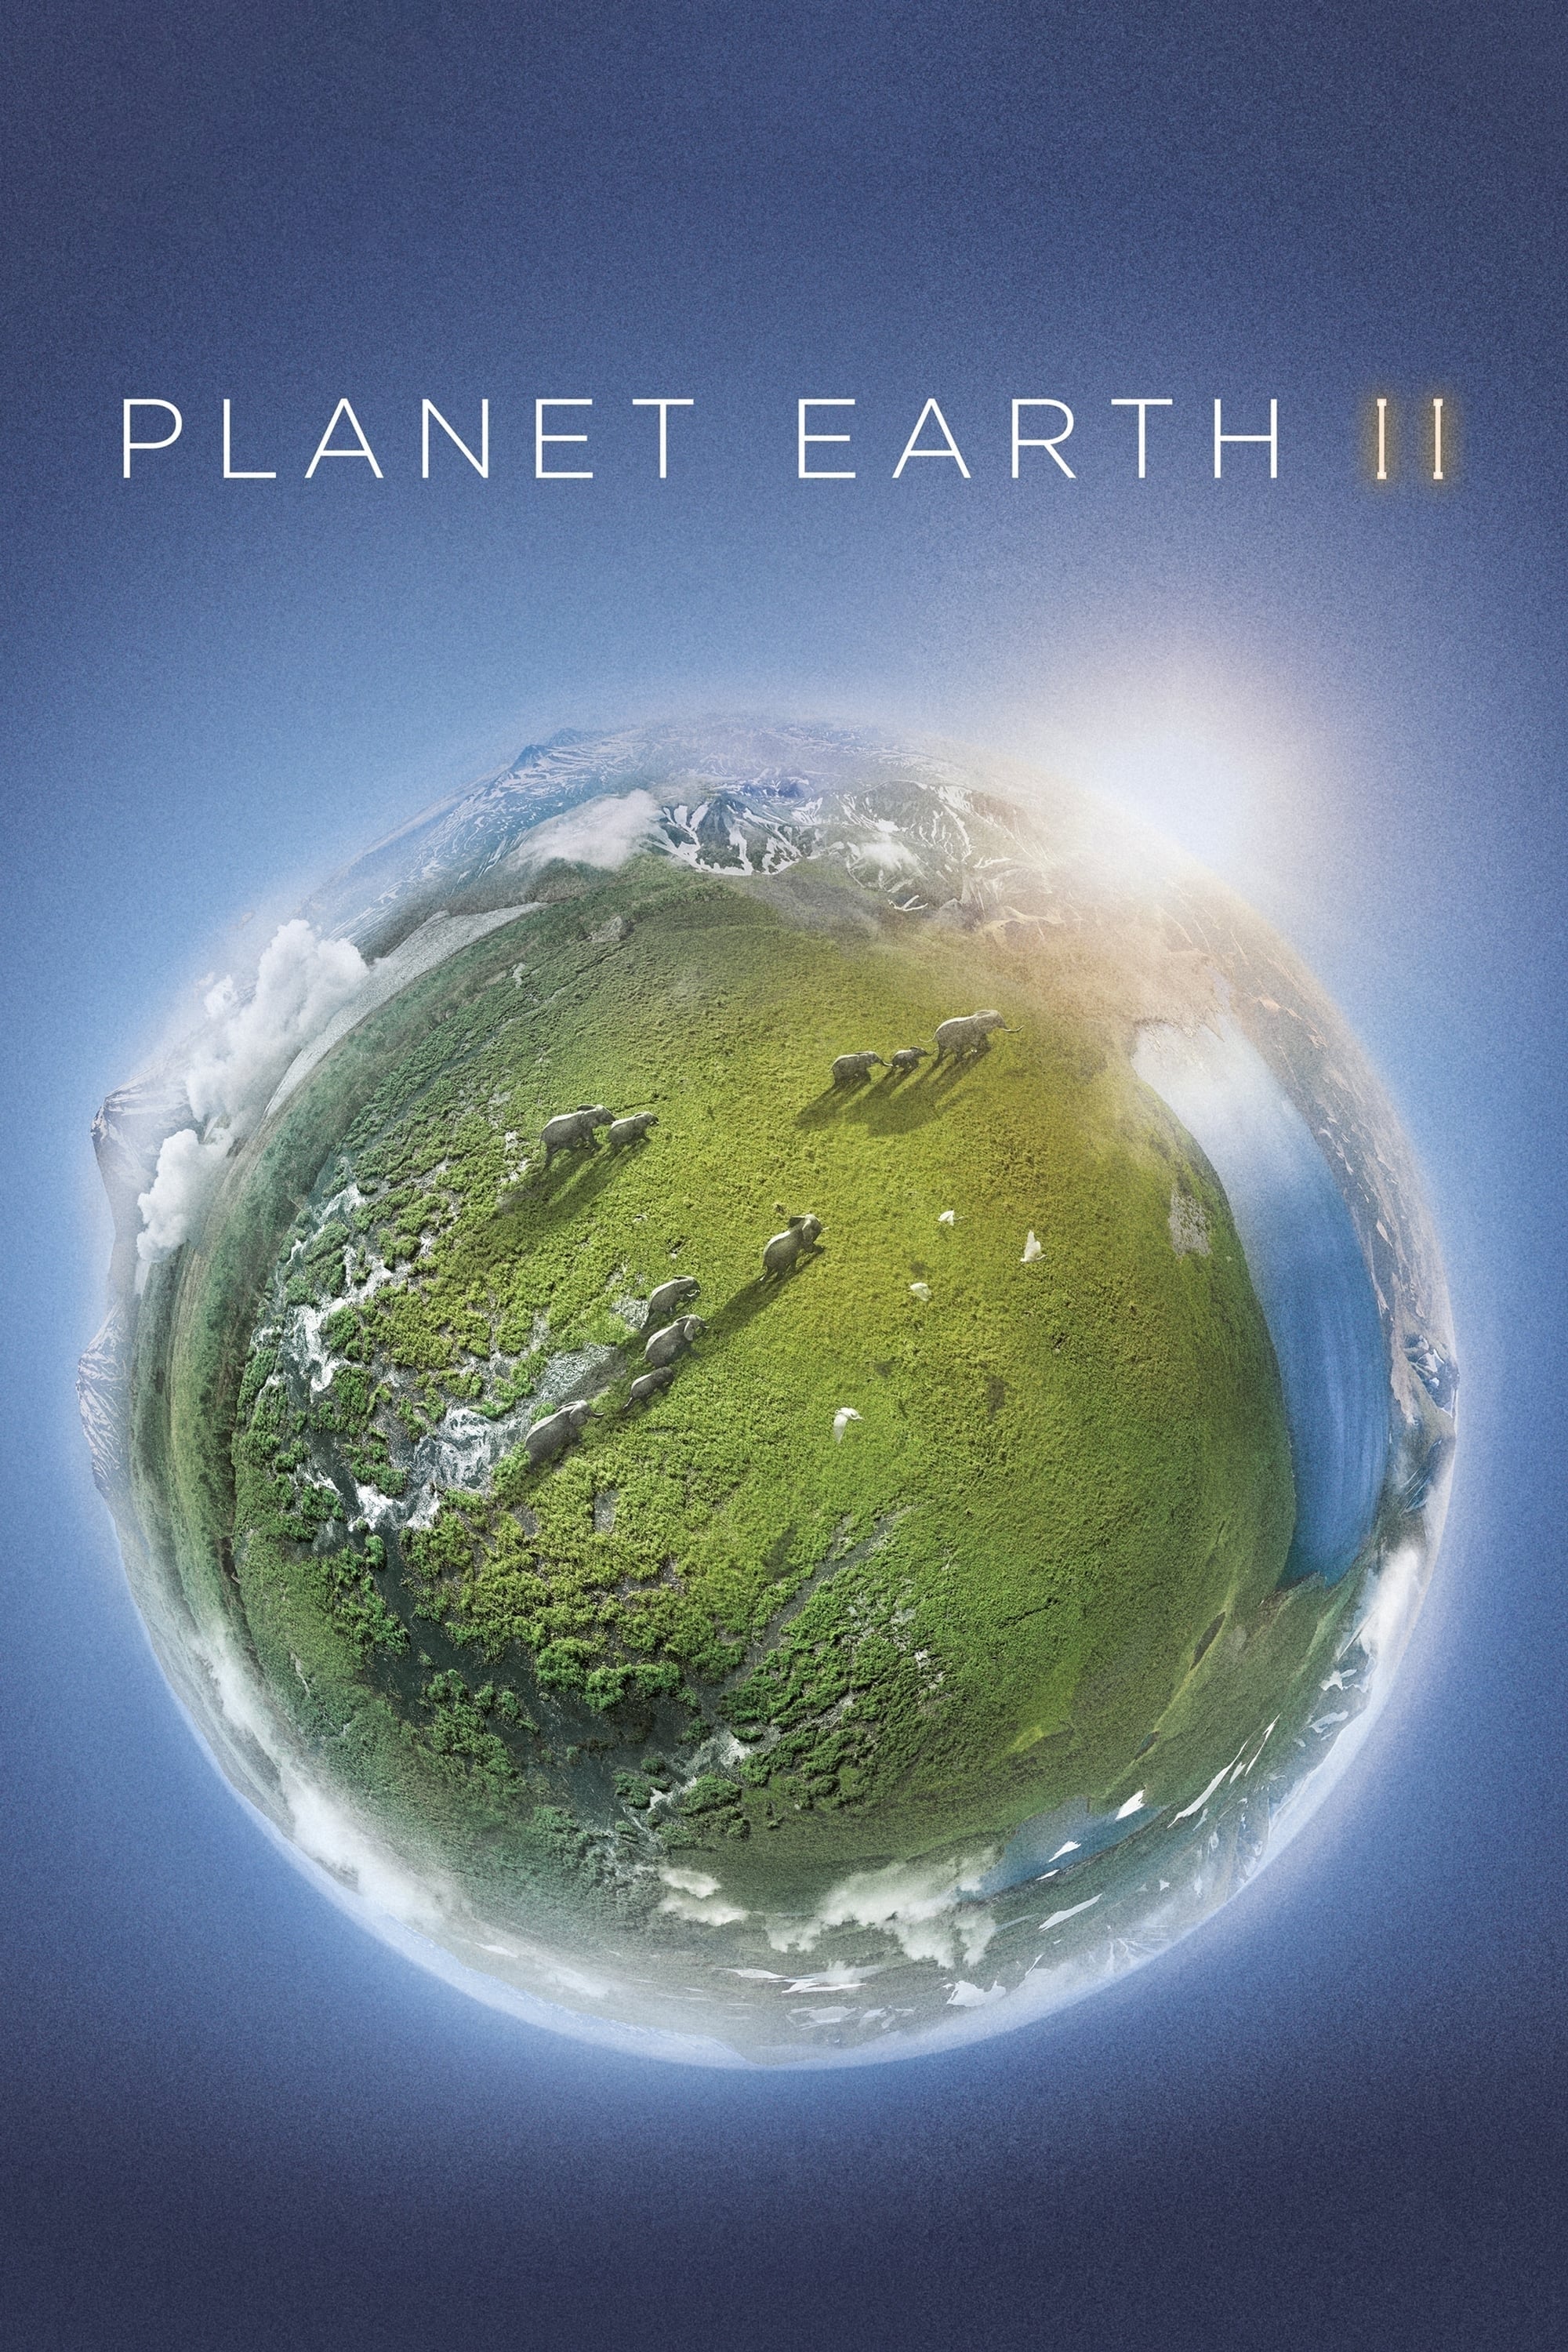 Planet Erde II: Eine Erde - viele Welten